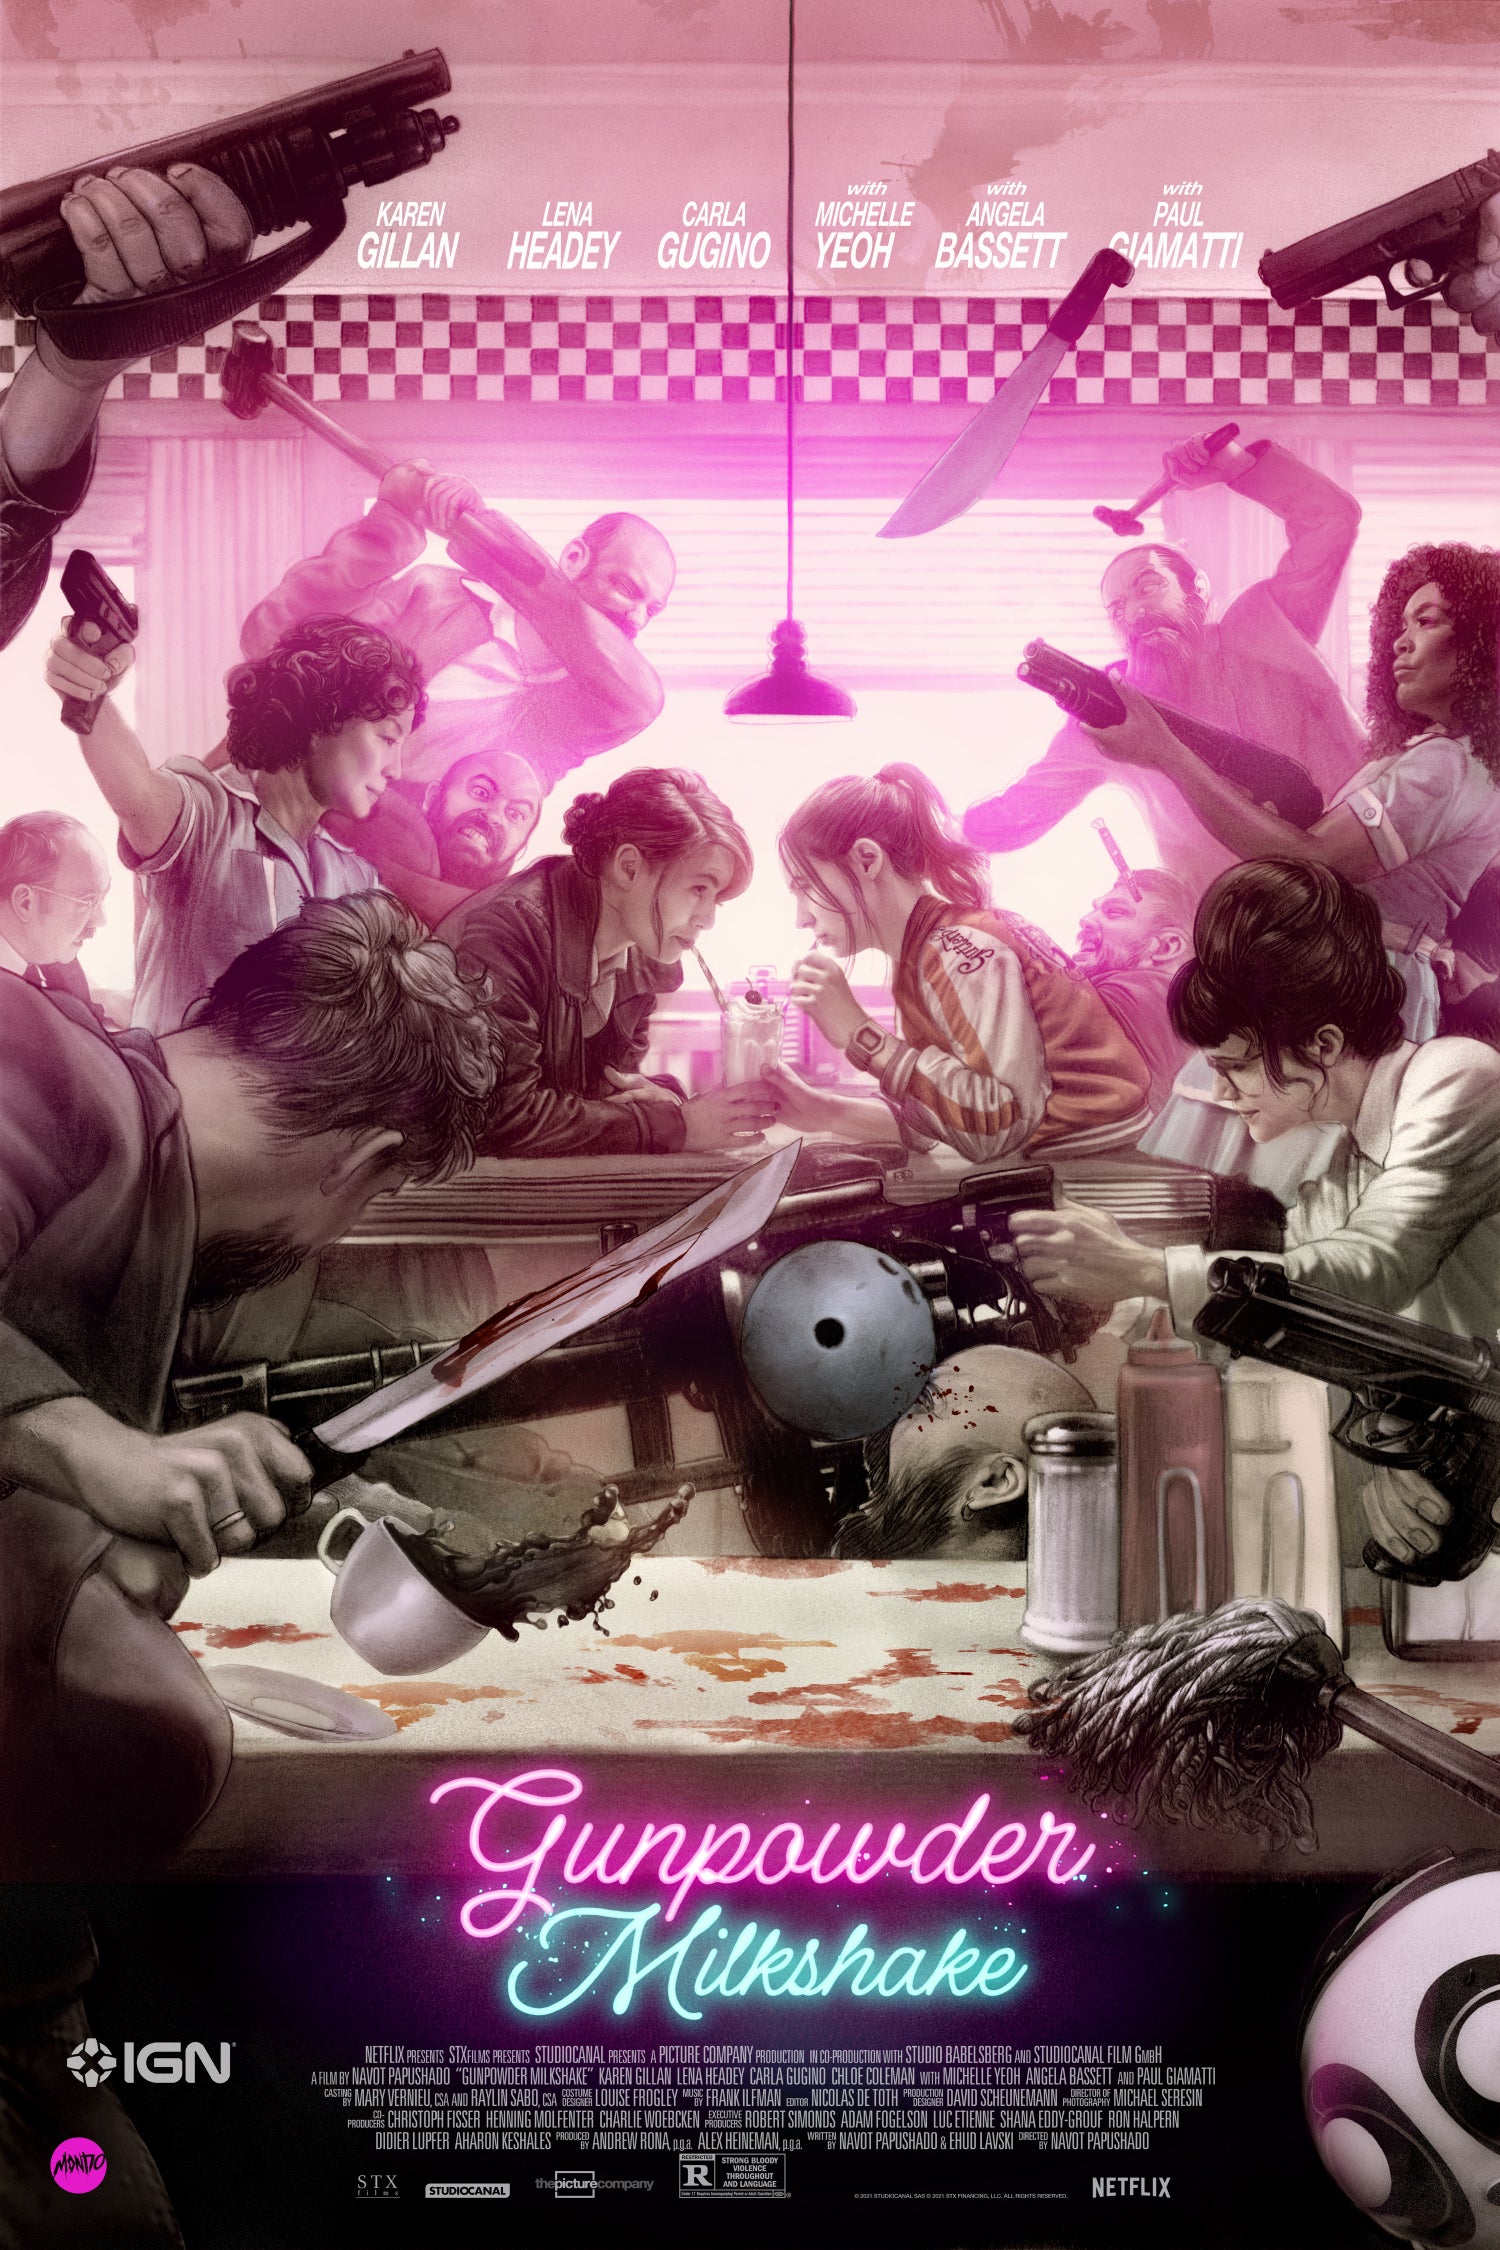 Gunpowder Milkshake 2021 Movie Wallpapers